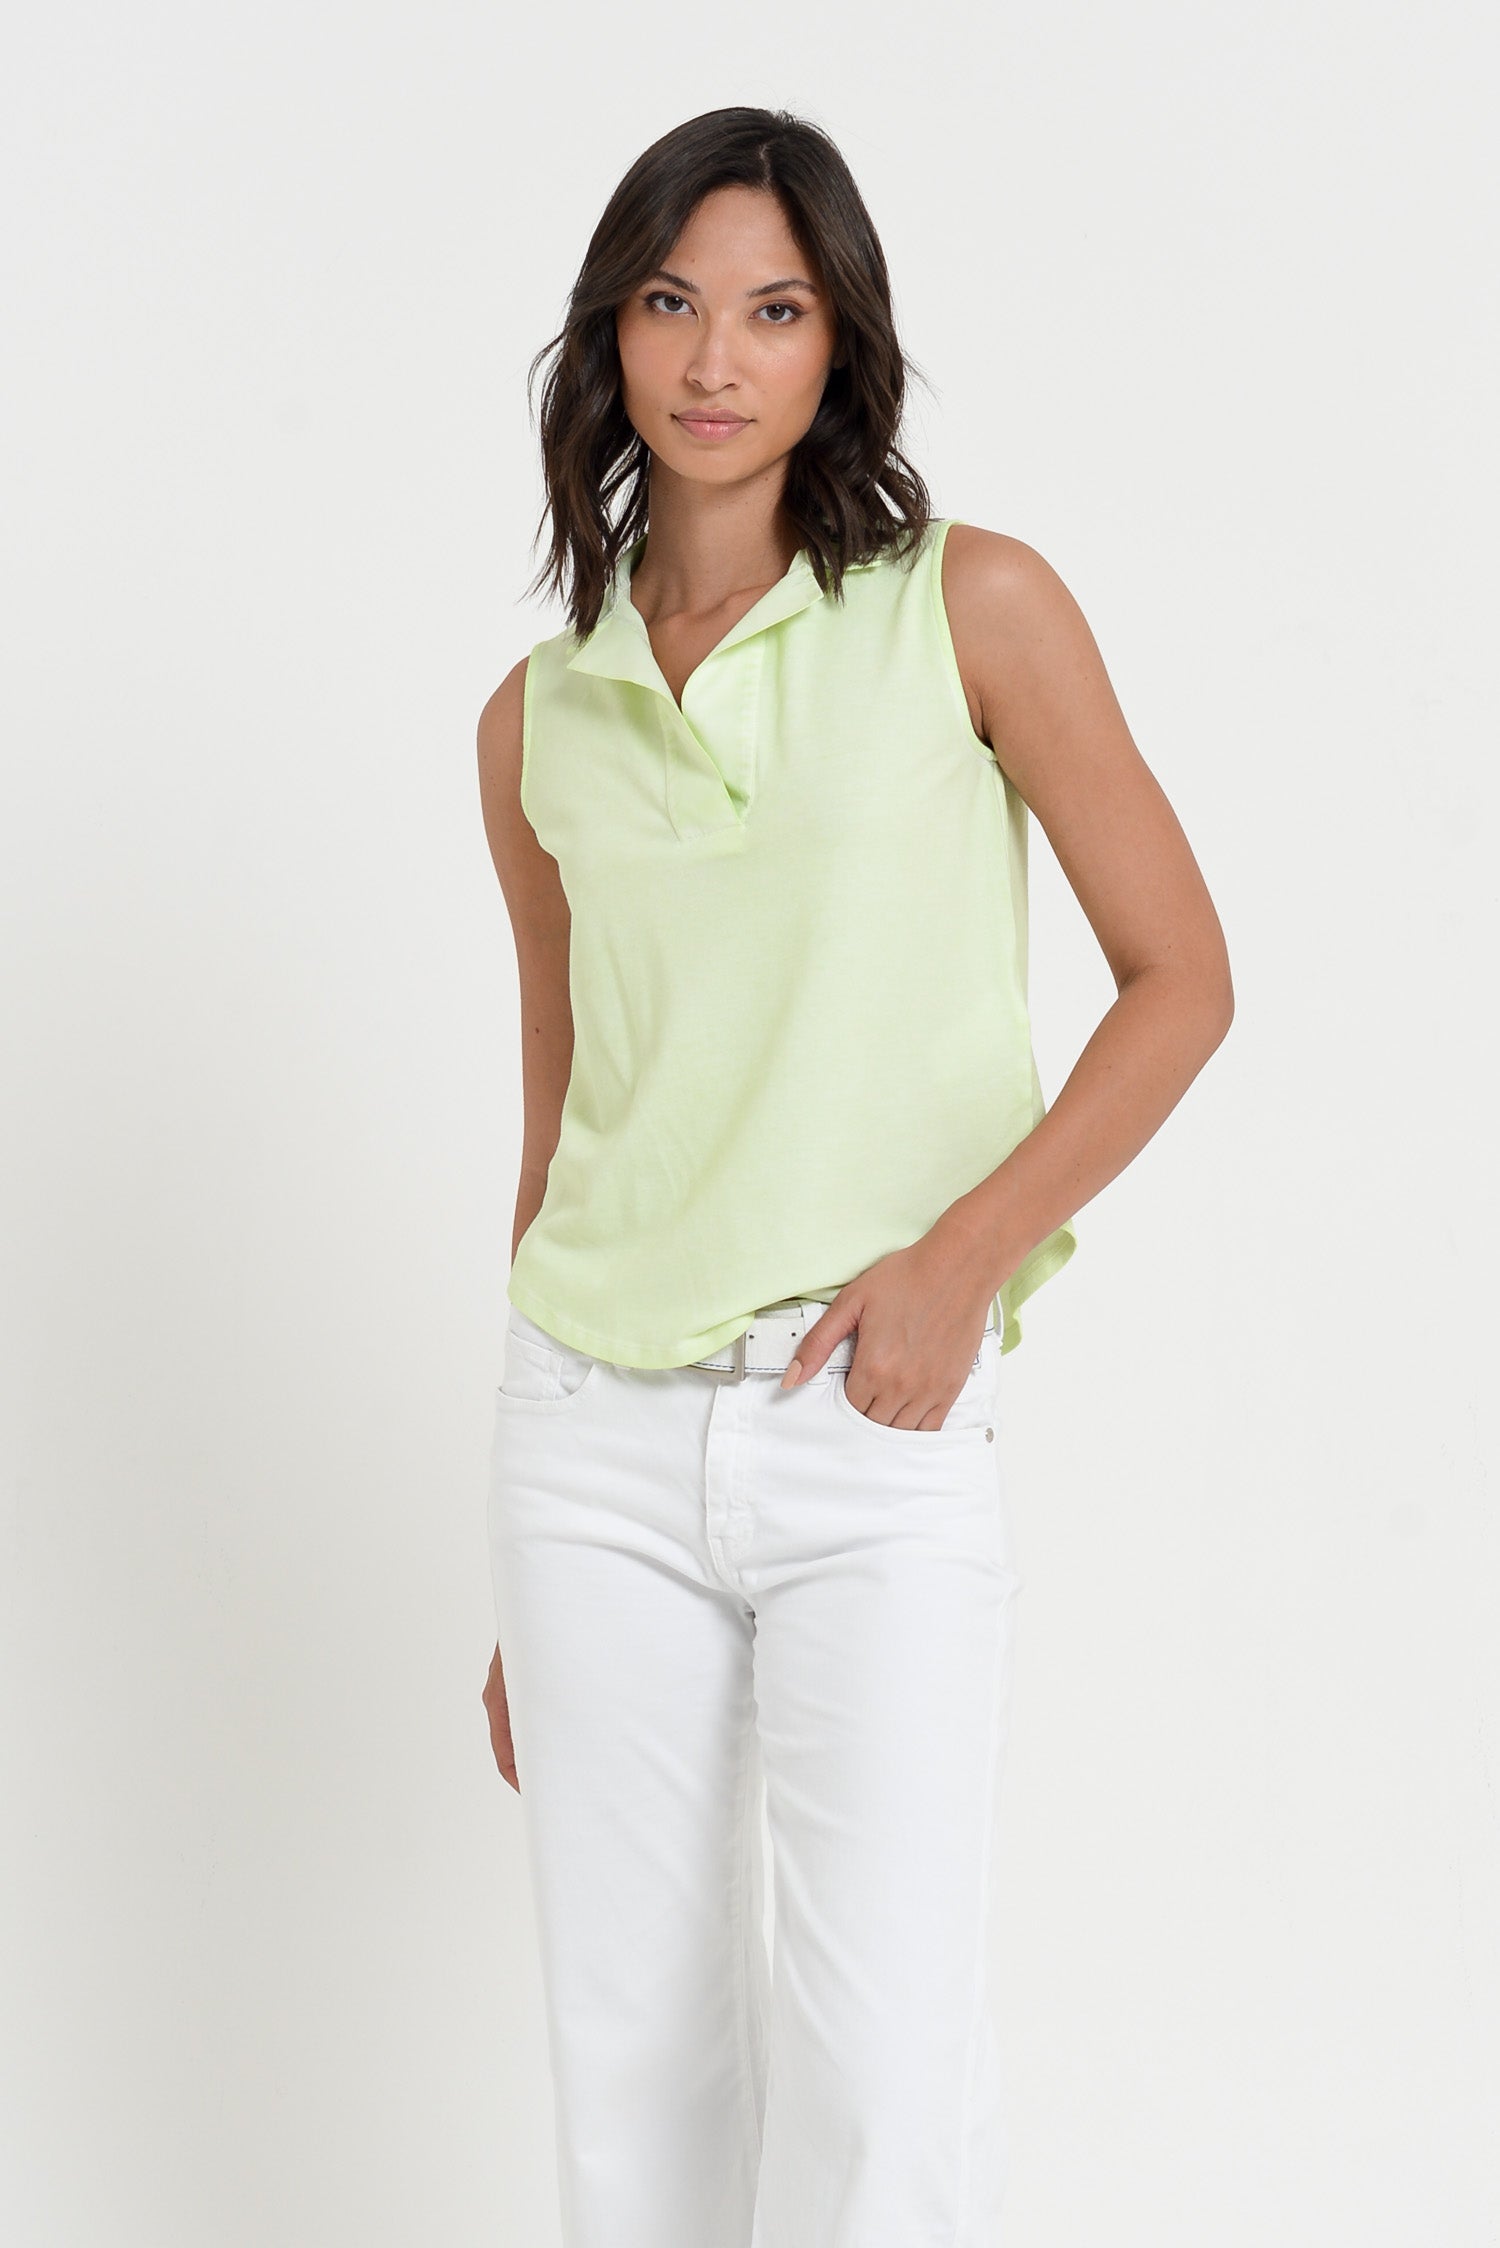 Megan Polo - Women's Sleeveless Pique Polo Shirt - Margarita